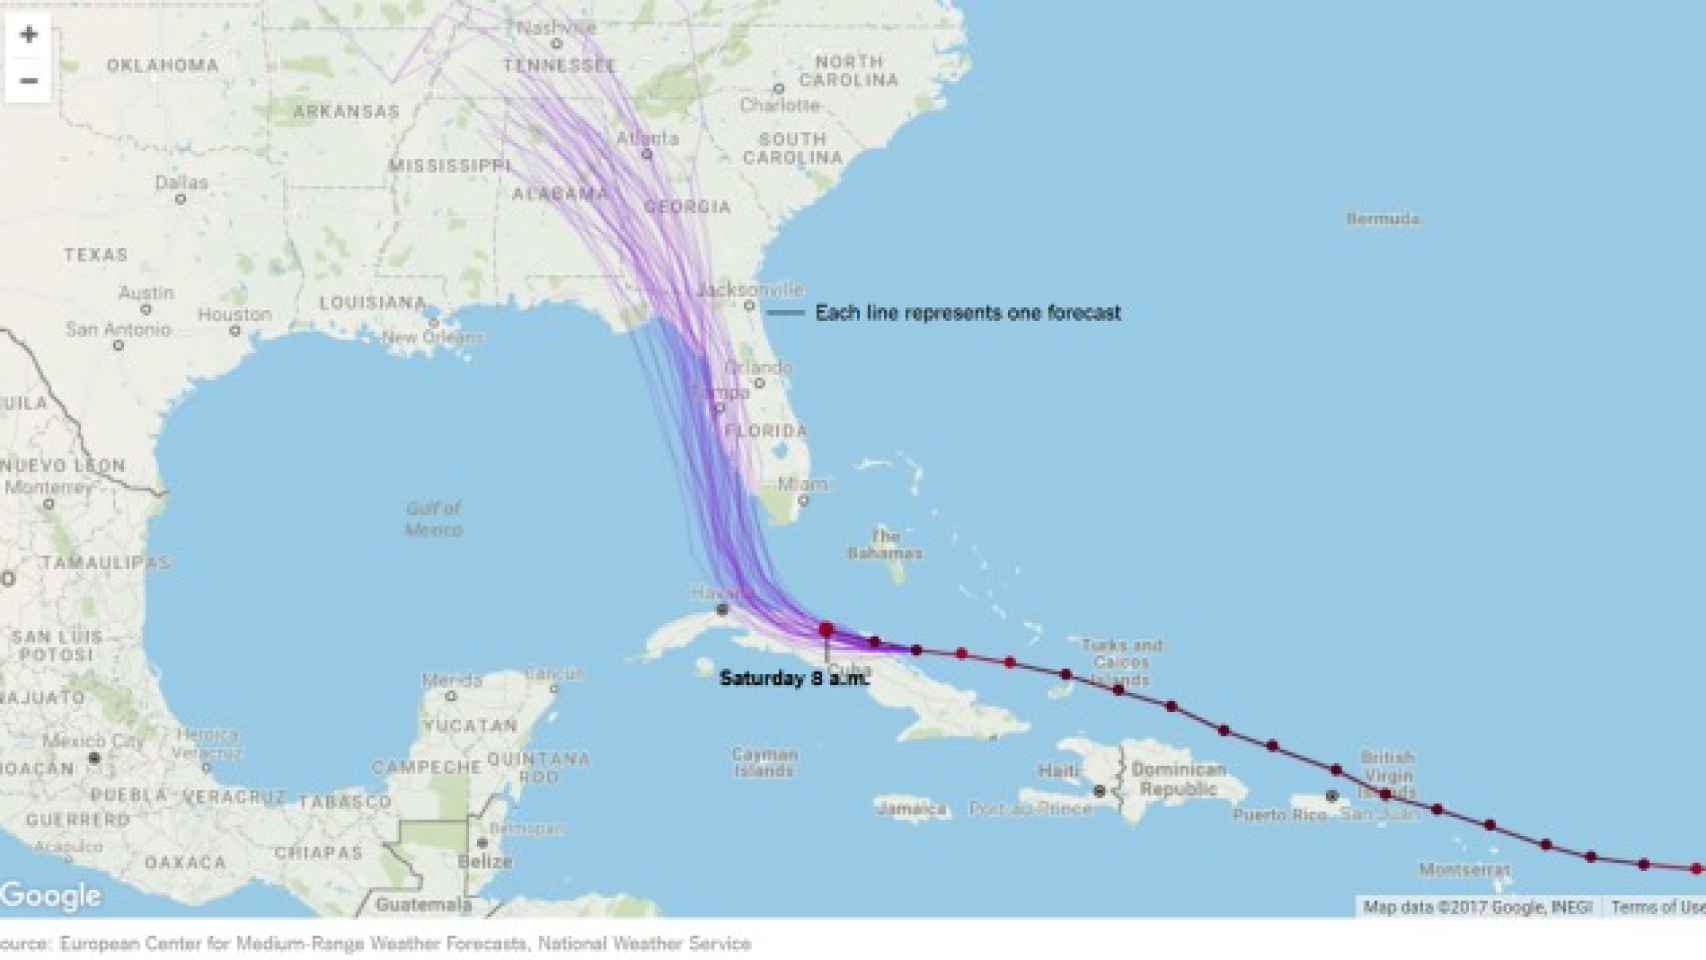 Esta imagen muestra el cono de incertidumbre desglosado en las posibles trayectorias que puede tomar el huracán.